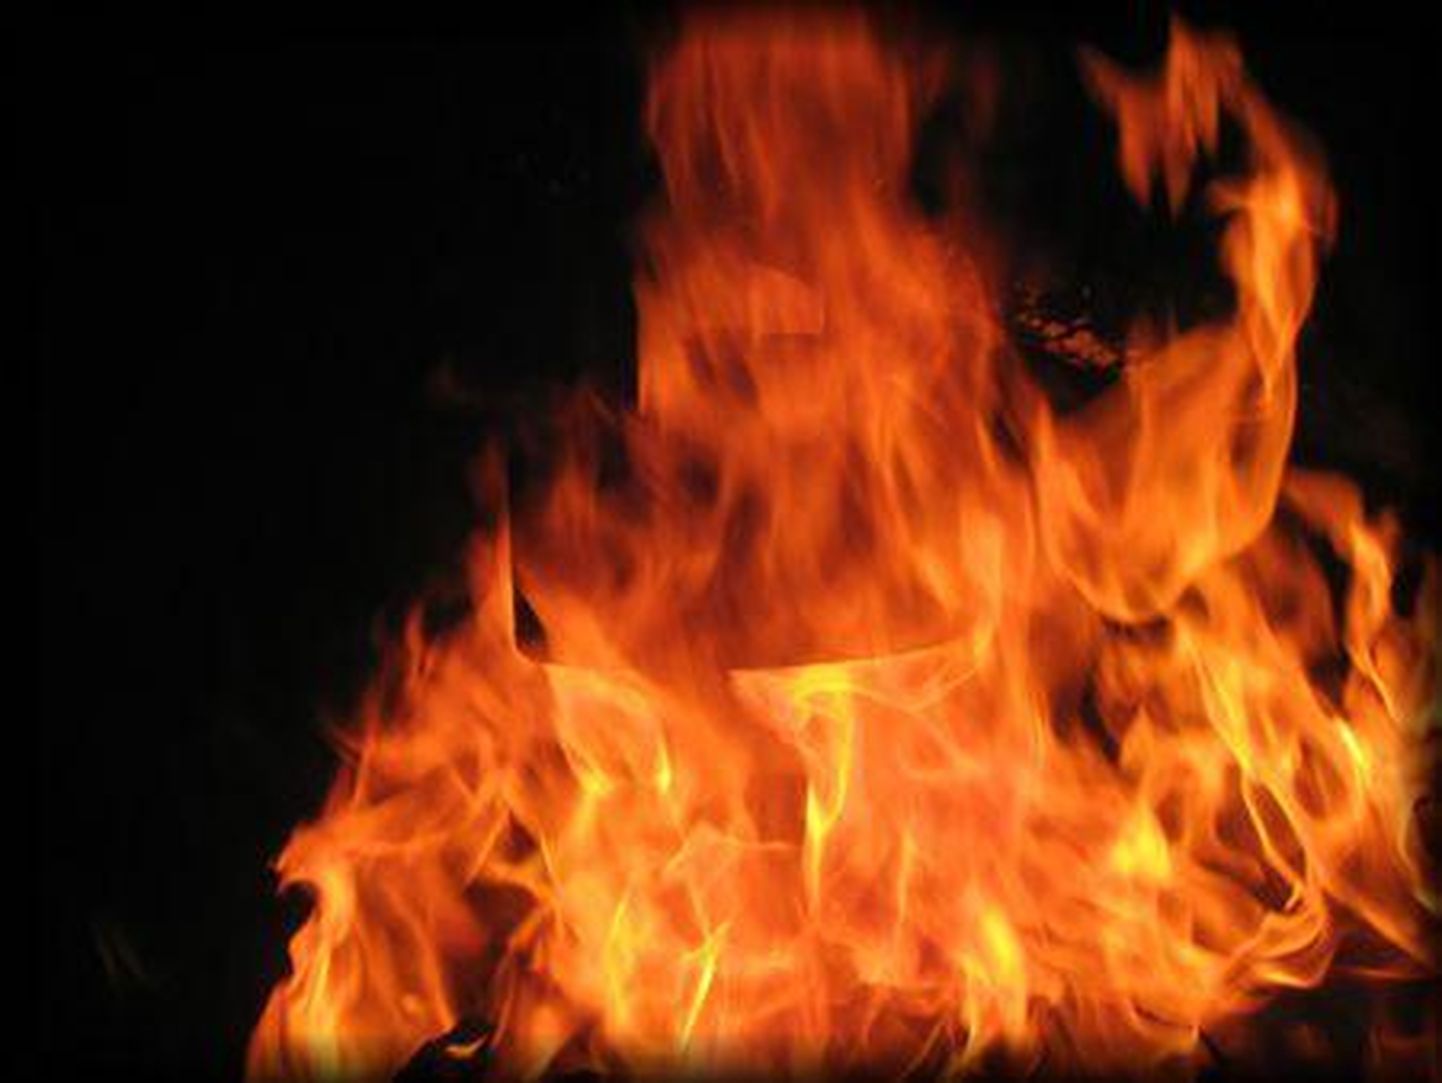 Kui päästjad kohale jõudsid, põles saun lahtise leegiga. Foto on illustreeriv.